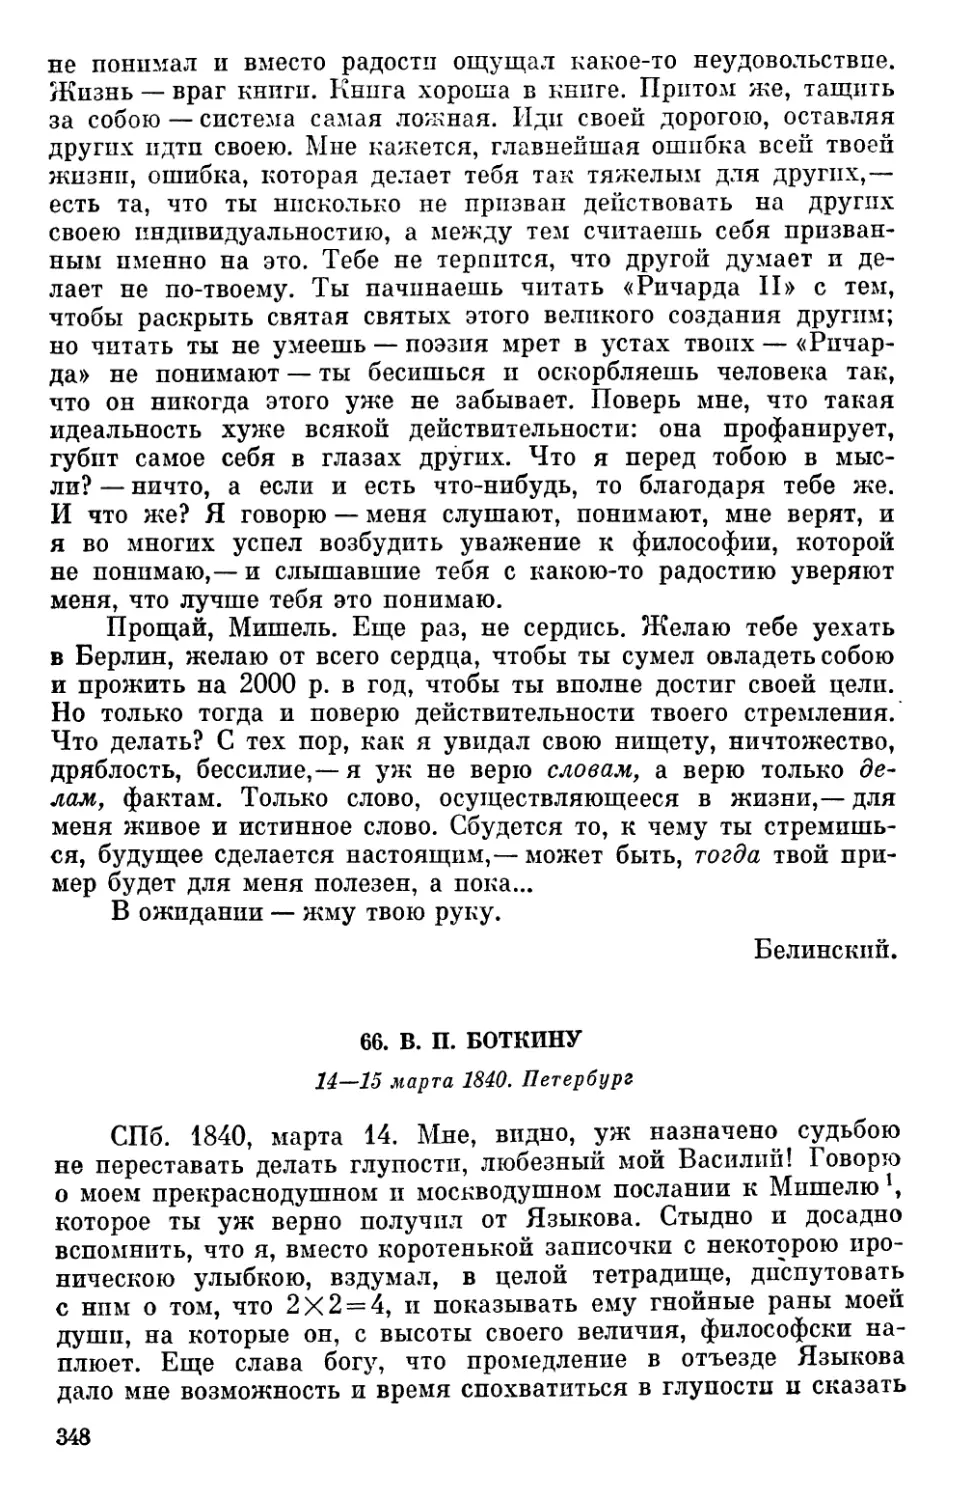 66. В. П. Боткину. 14—15 марта 1840